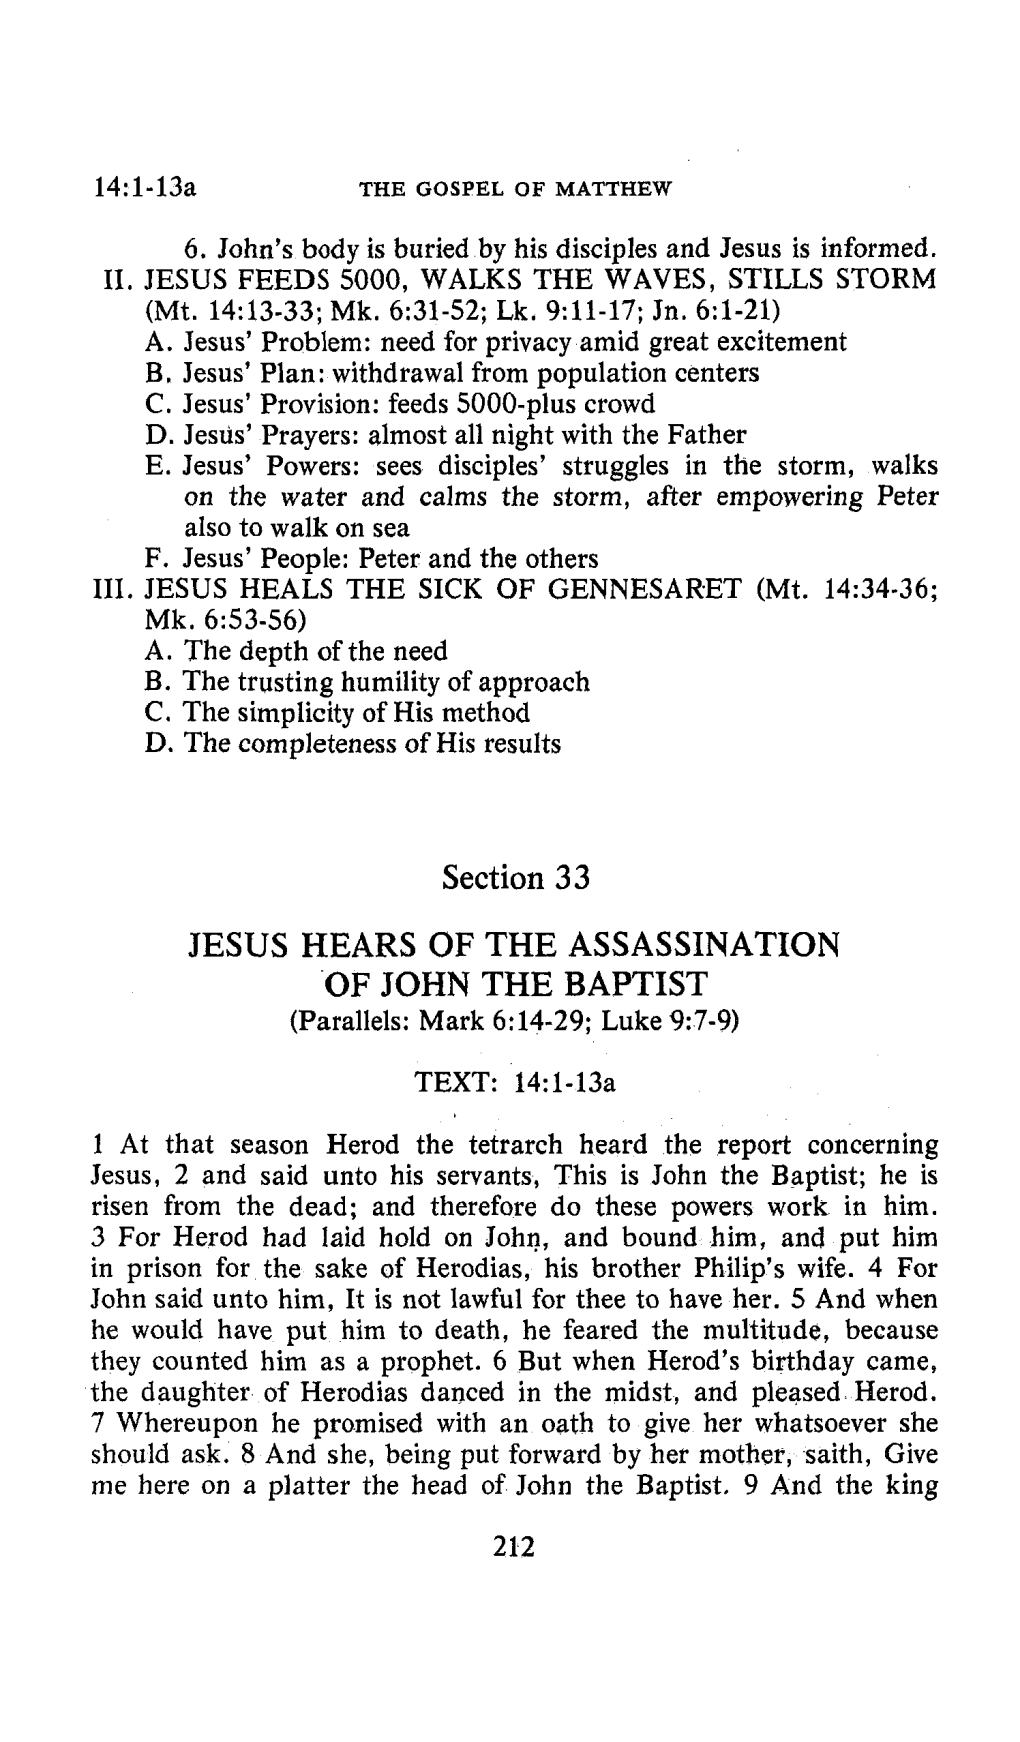 JESUS HEARS of the ASSASSINATION of JOHN the BAPTIST (Parallels: Mark 6:14-29; Luke 9:7-9)